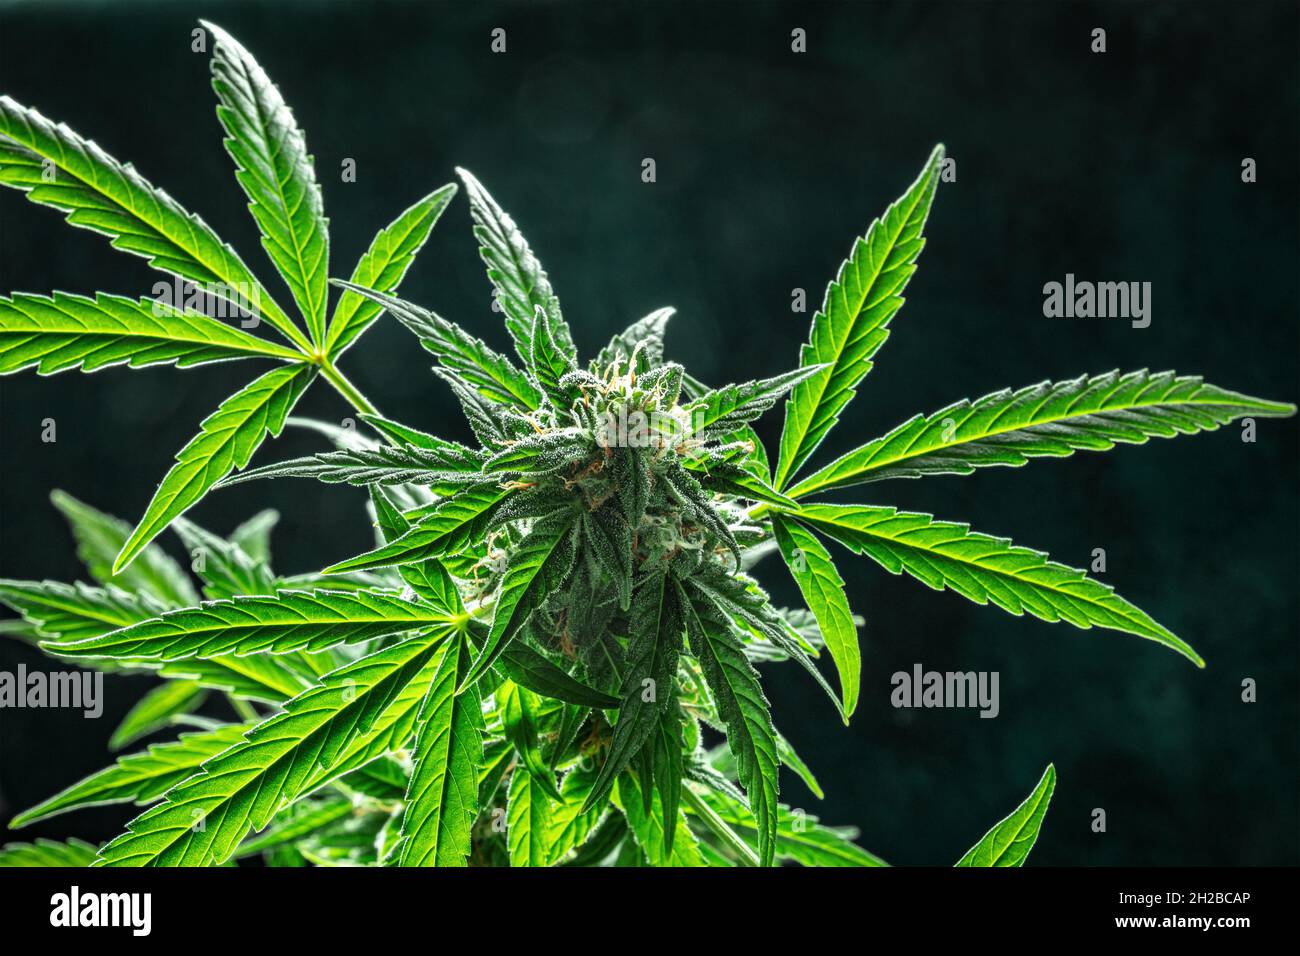 Plante de cannabis, prête pour la récolte, en fleur.Fleurs de marijuana avec des stigmates jaunes et des feuilles vertes.Culture du cannabis à des fins médicales Banque D'Images